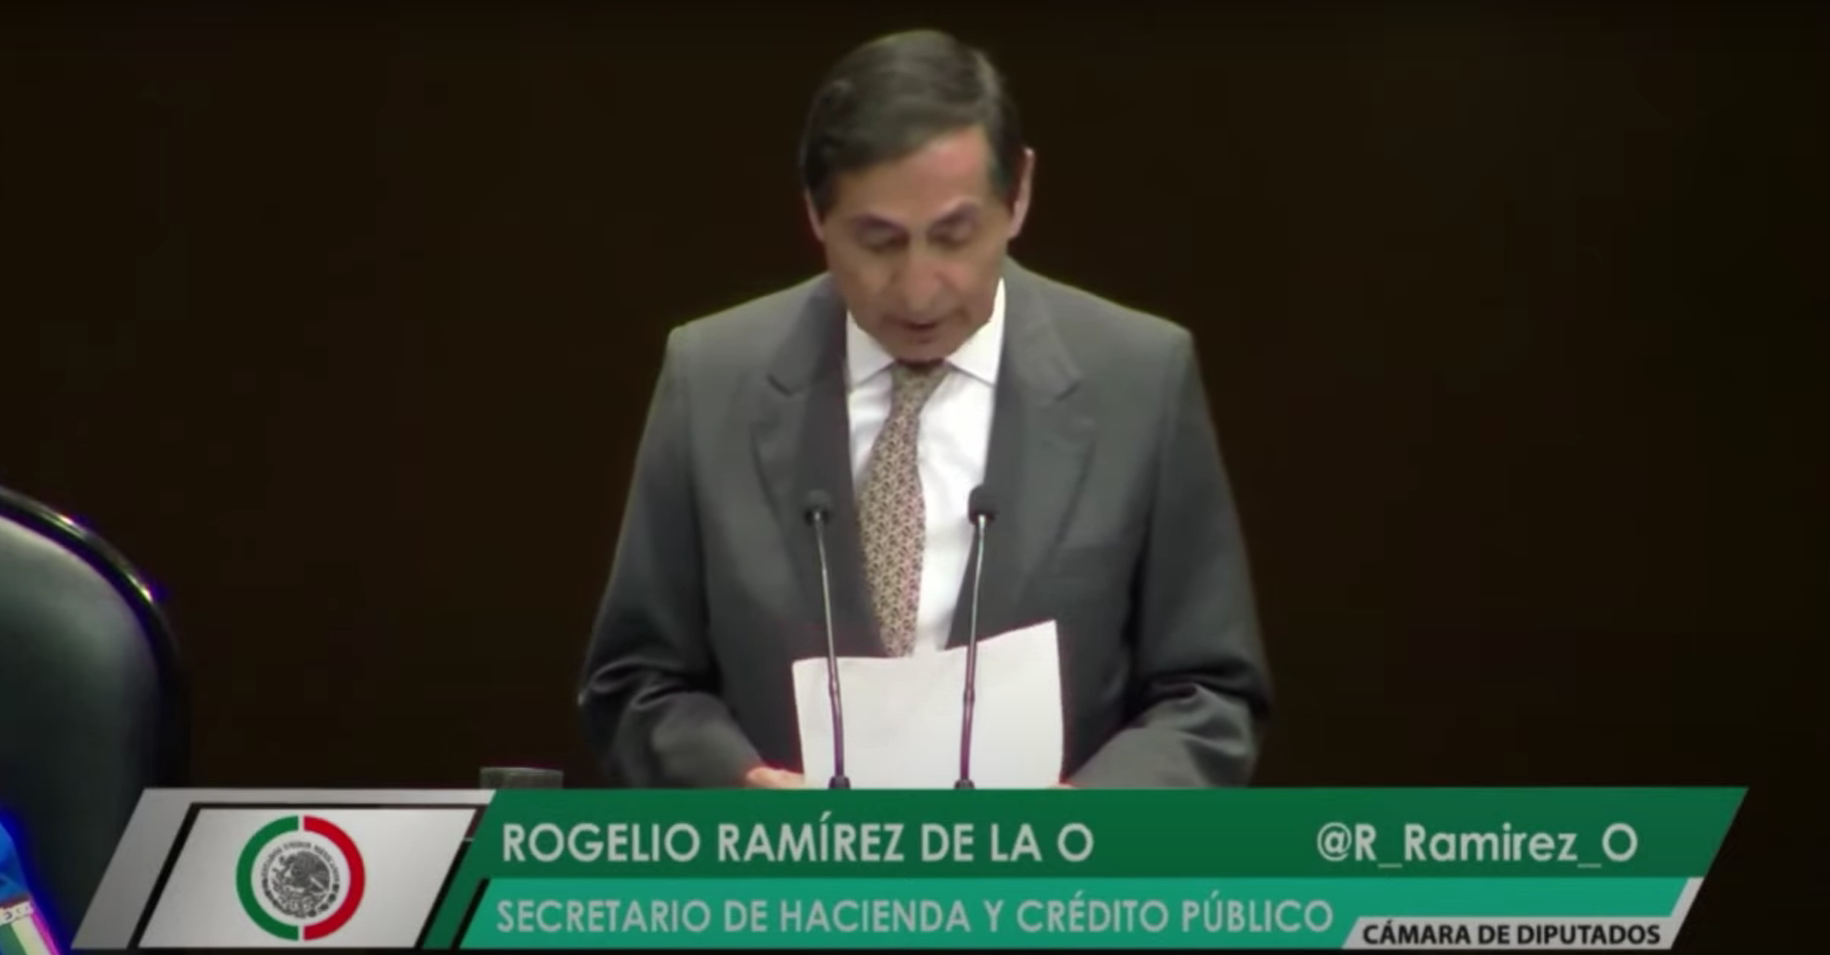 Comparece Ramirez de la O en la Cámara de Diputados, defiende política económica del gobierno de López Obrador